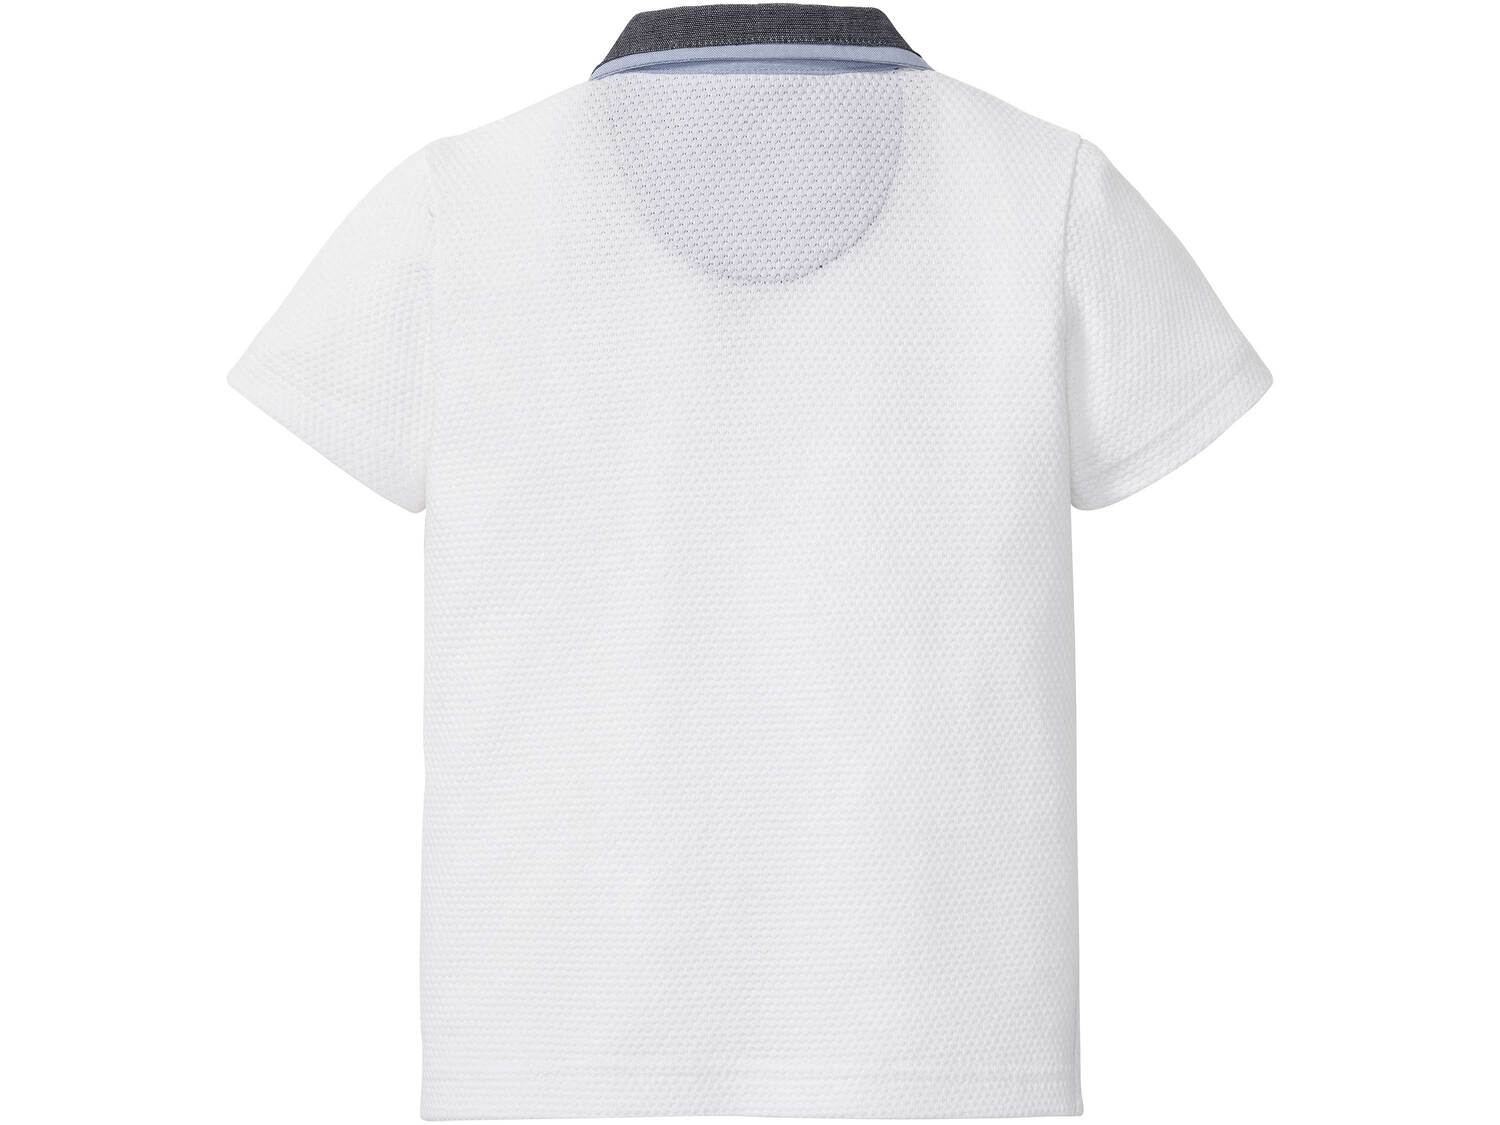 Koszulka chłopięca polo Lupilu, cena 14,99 PLN 
- 100% bawełny
- wysokiej jakości ...